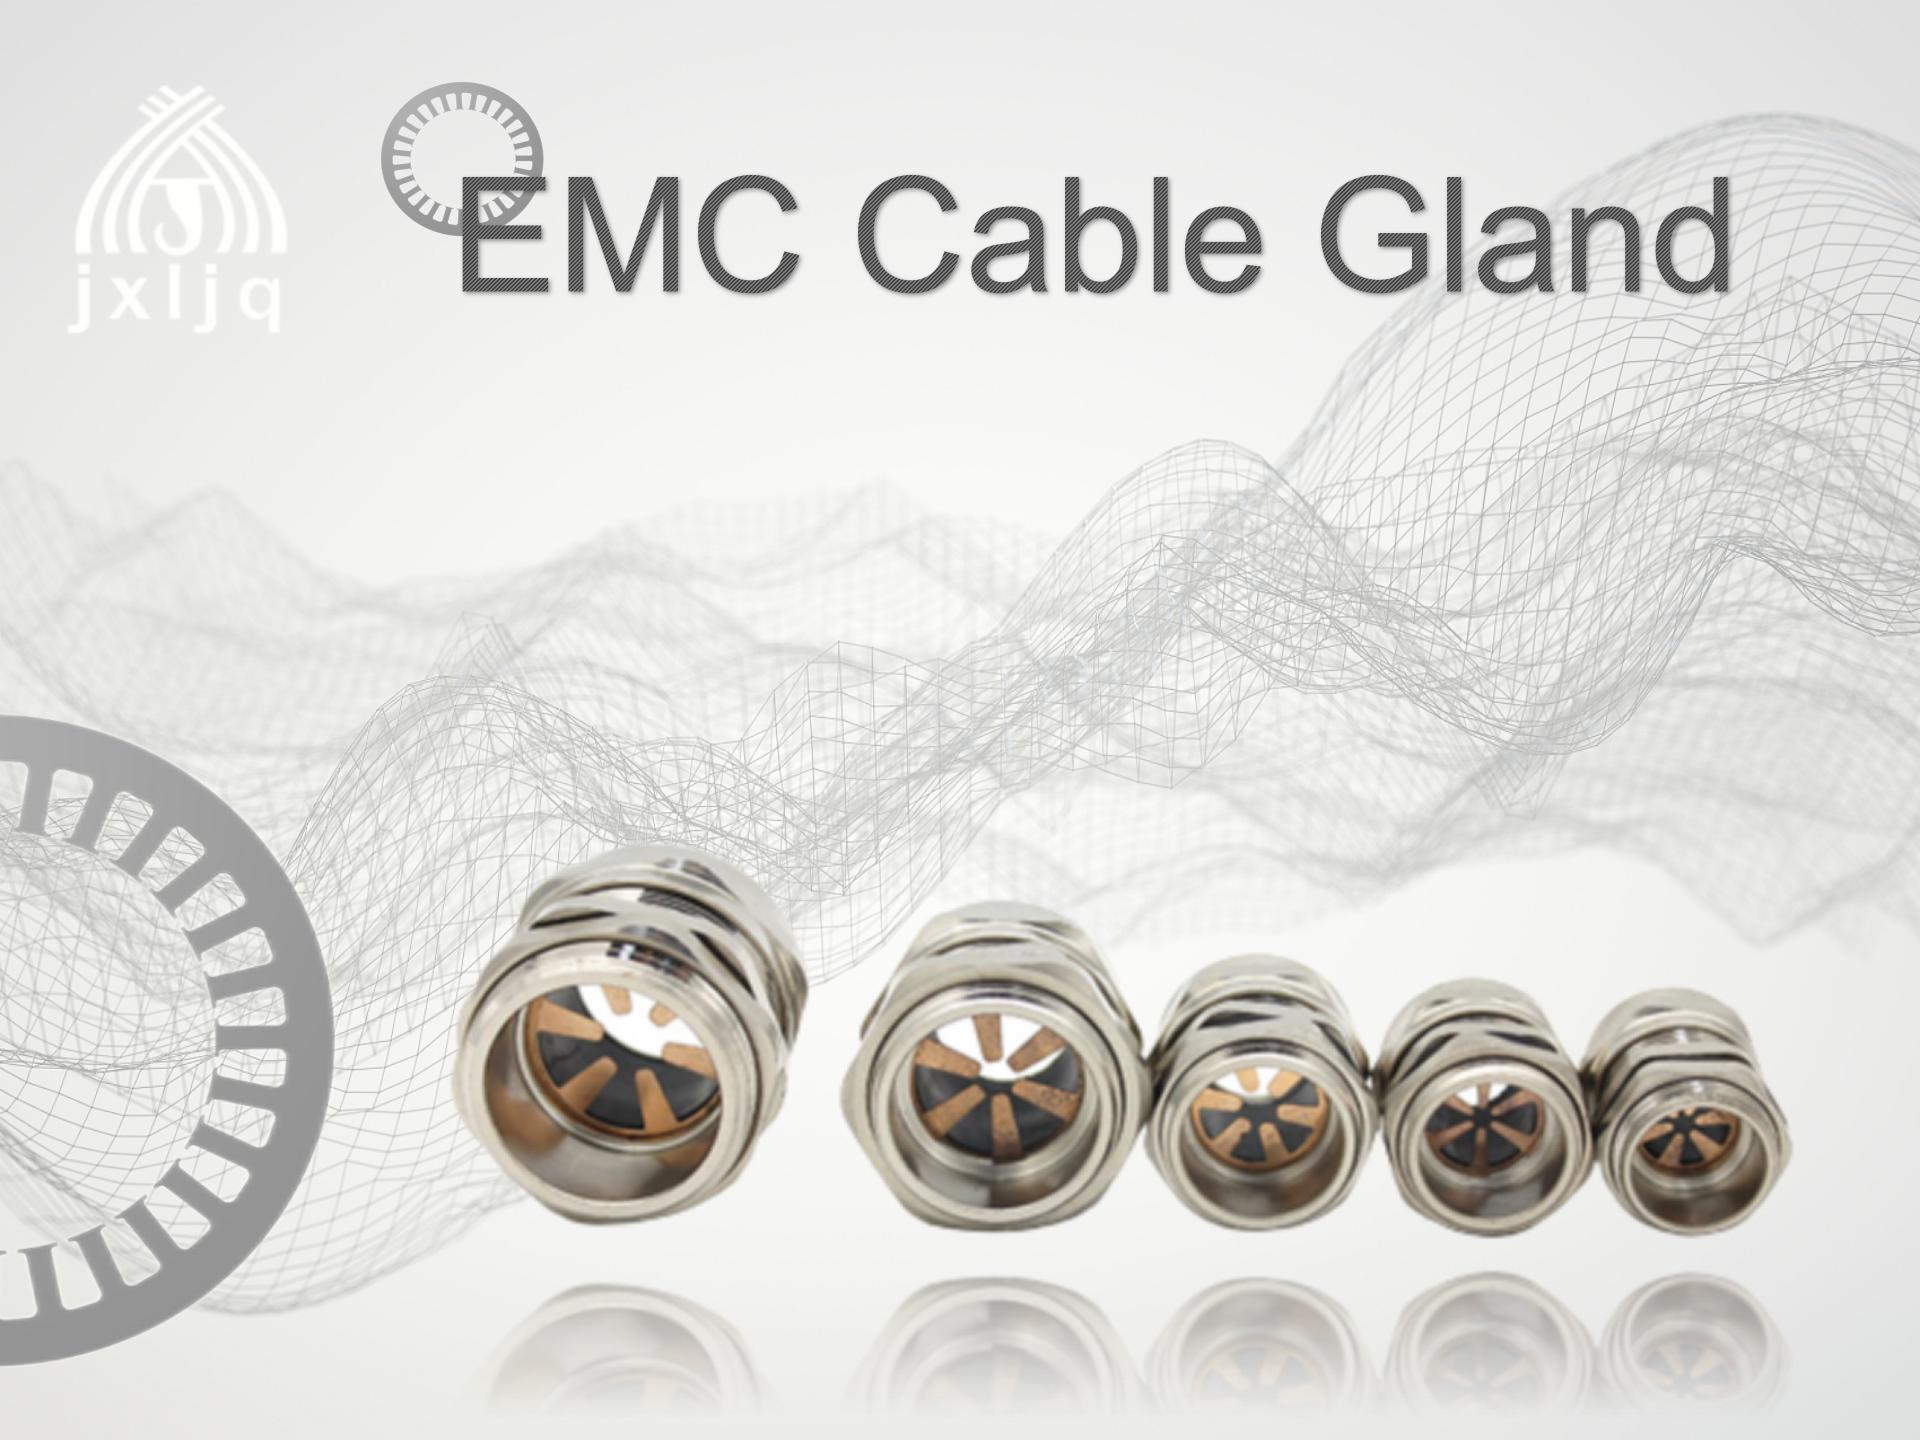 Iyini i-EMC cable gland?